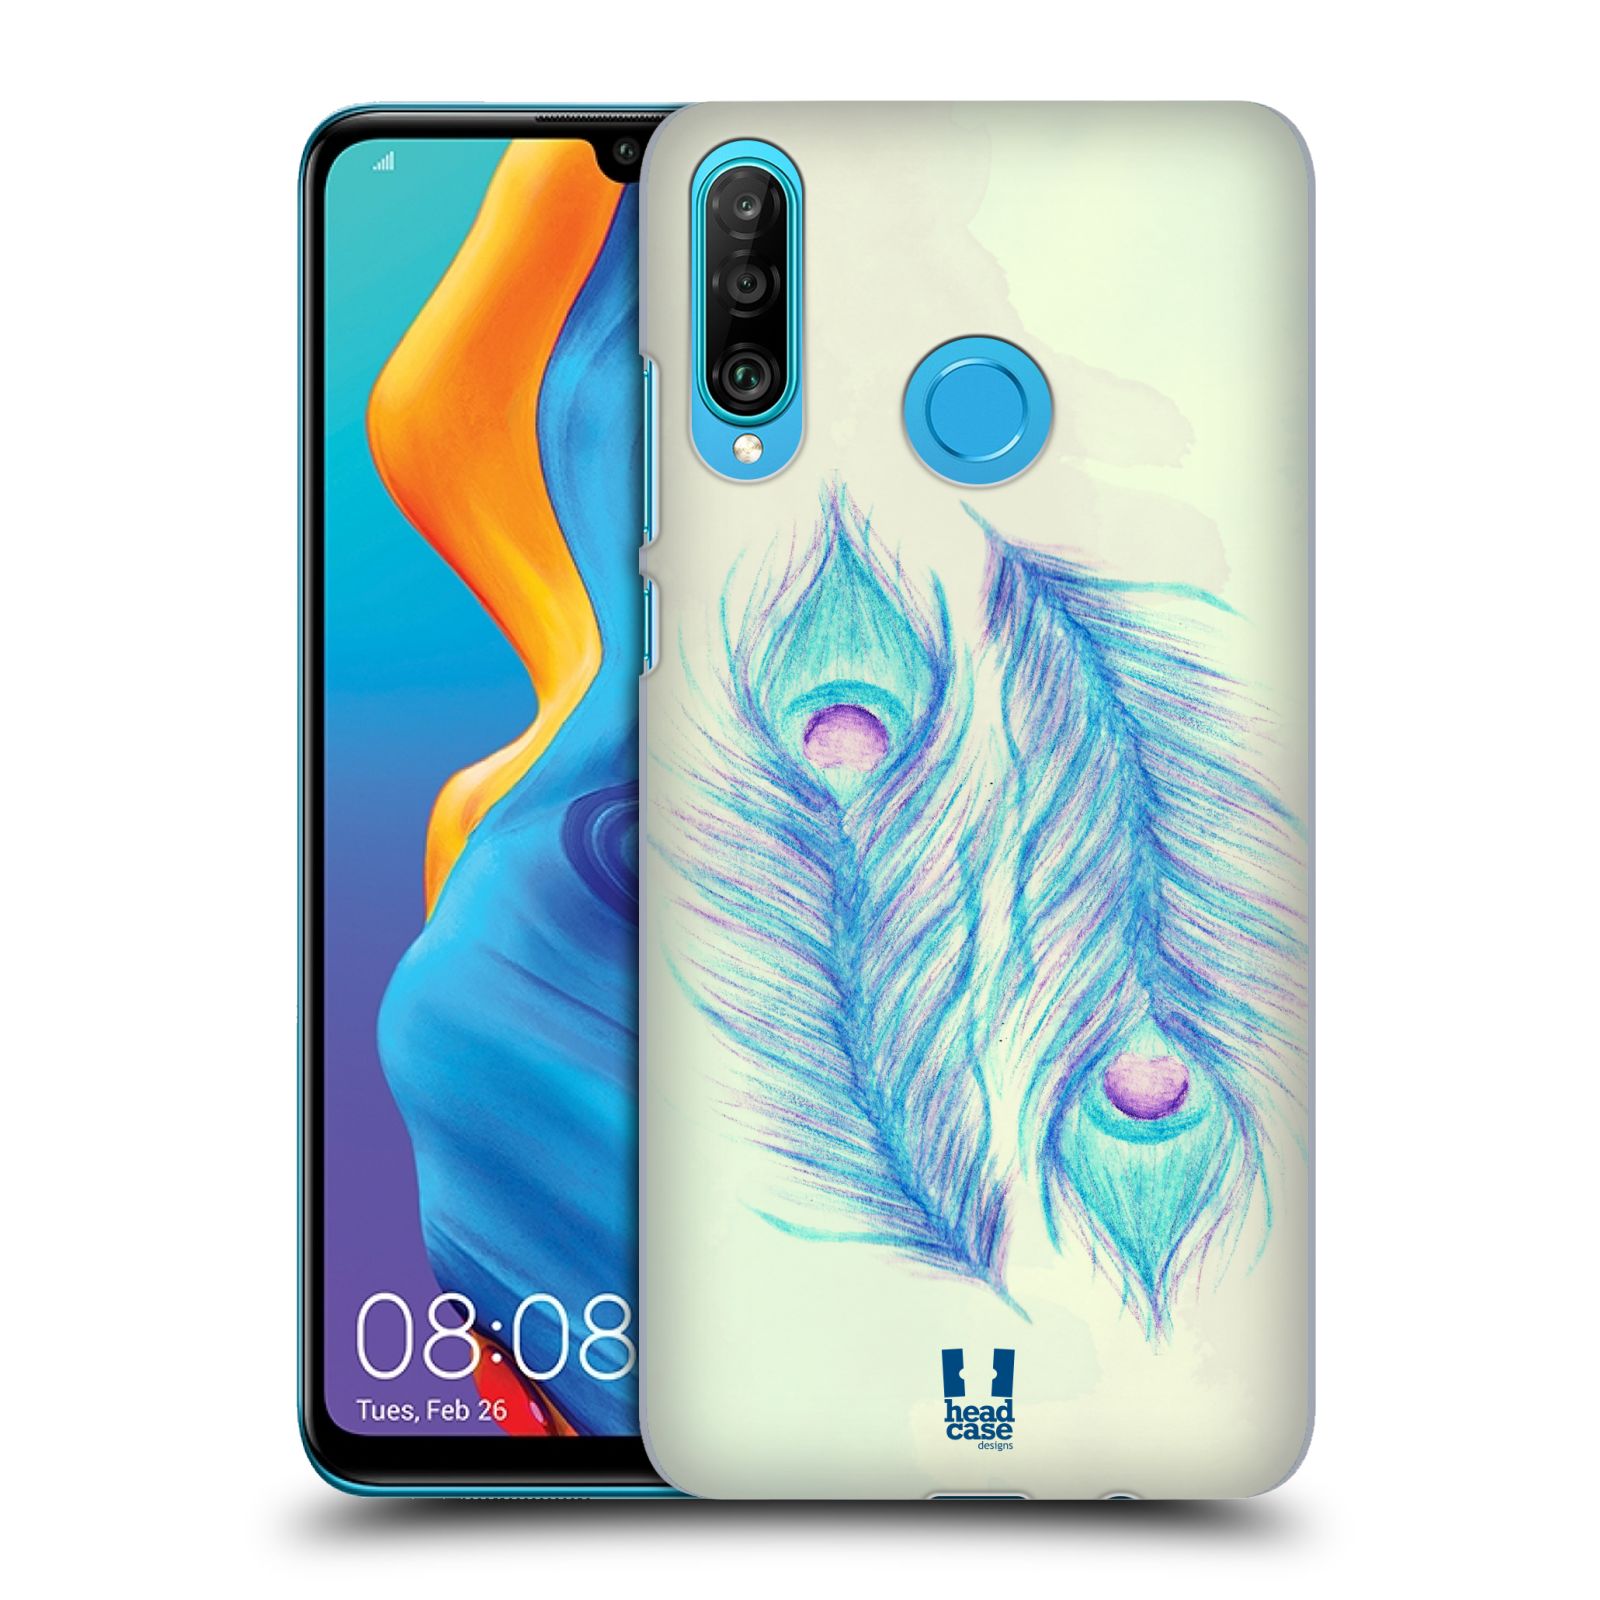 Pouzdro na mobil Huawei P30 LITE - HEAD CASE - vzor Paví pírka barevná MODRÁ PÁR